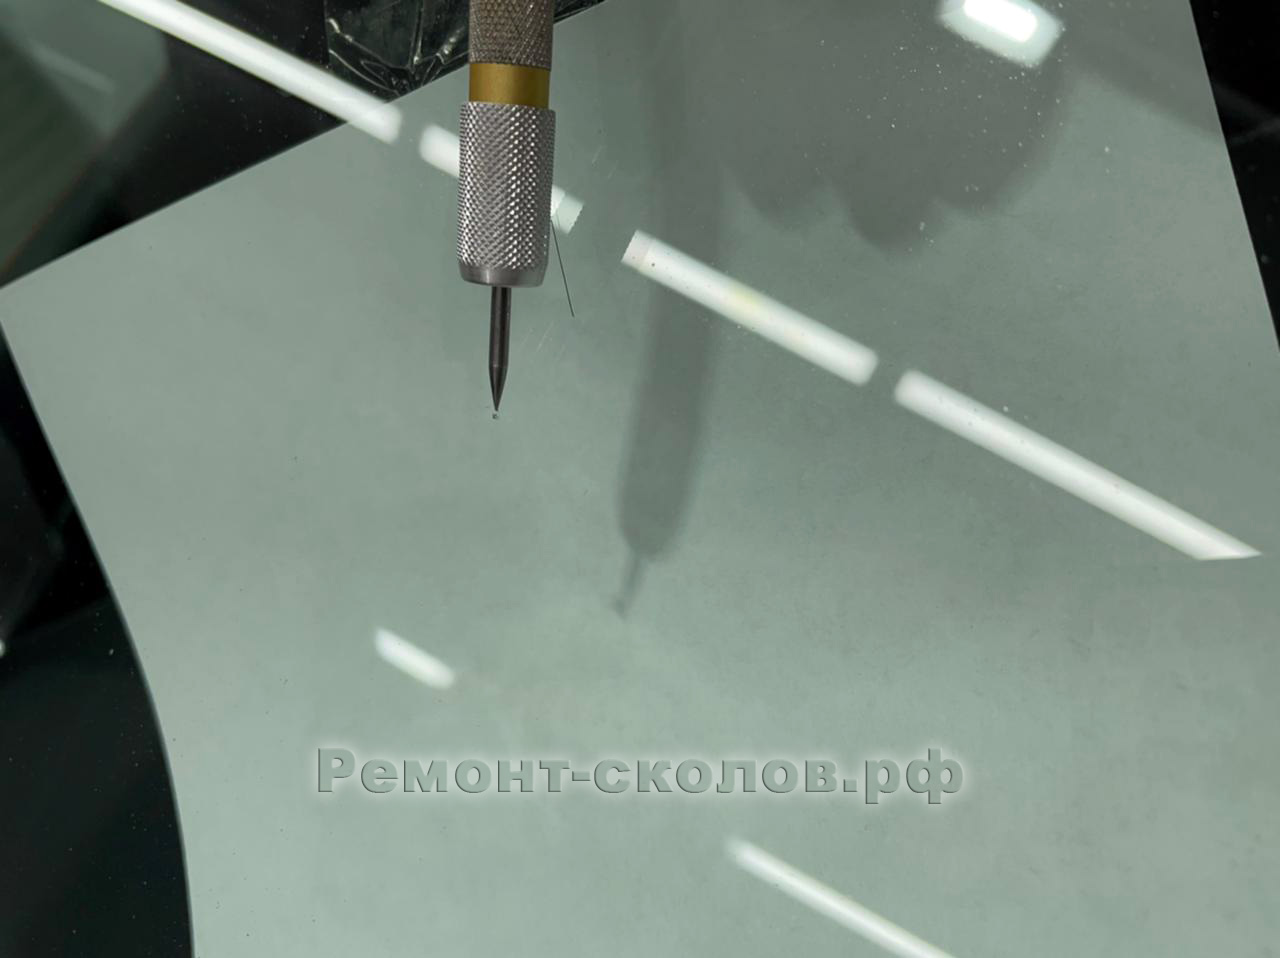 Mercedes SLS AMG 63 ремонт скола в ЮЗАО